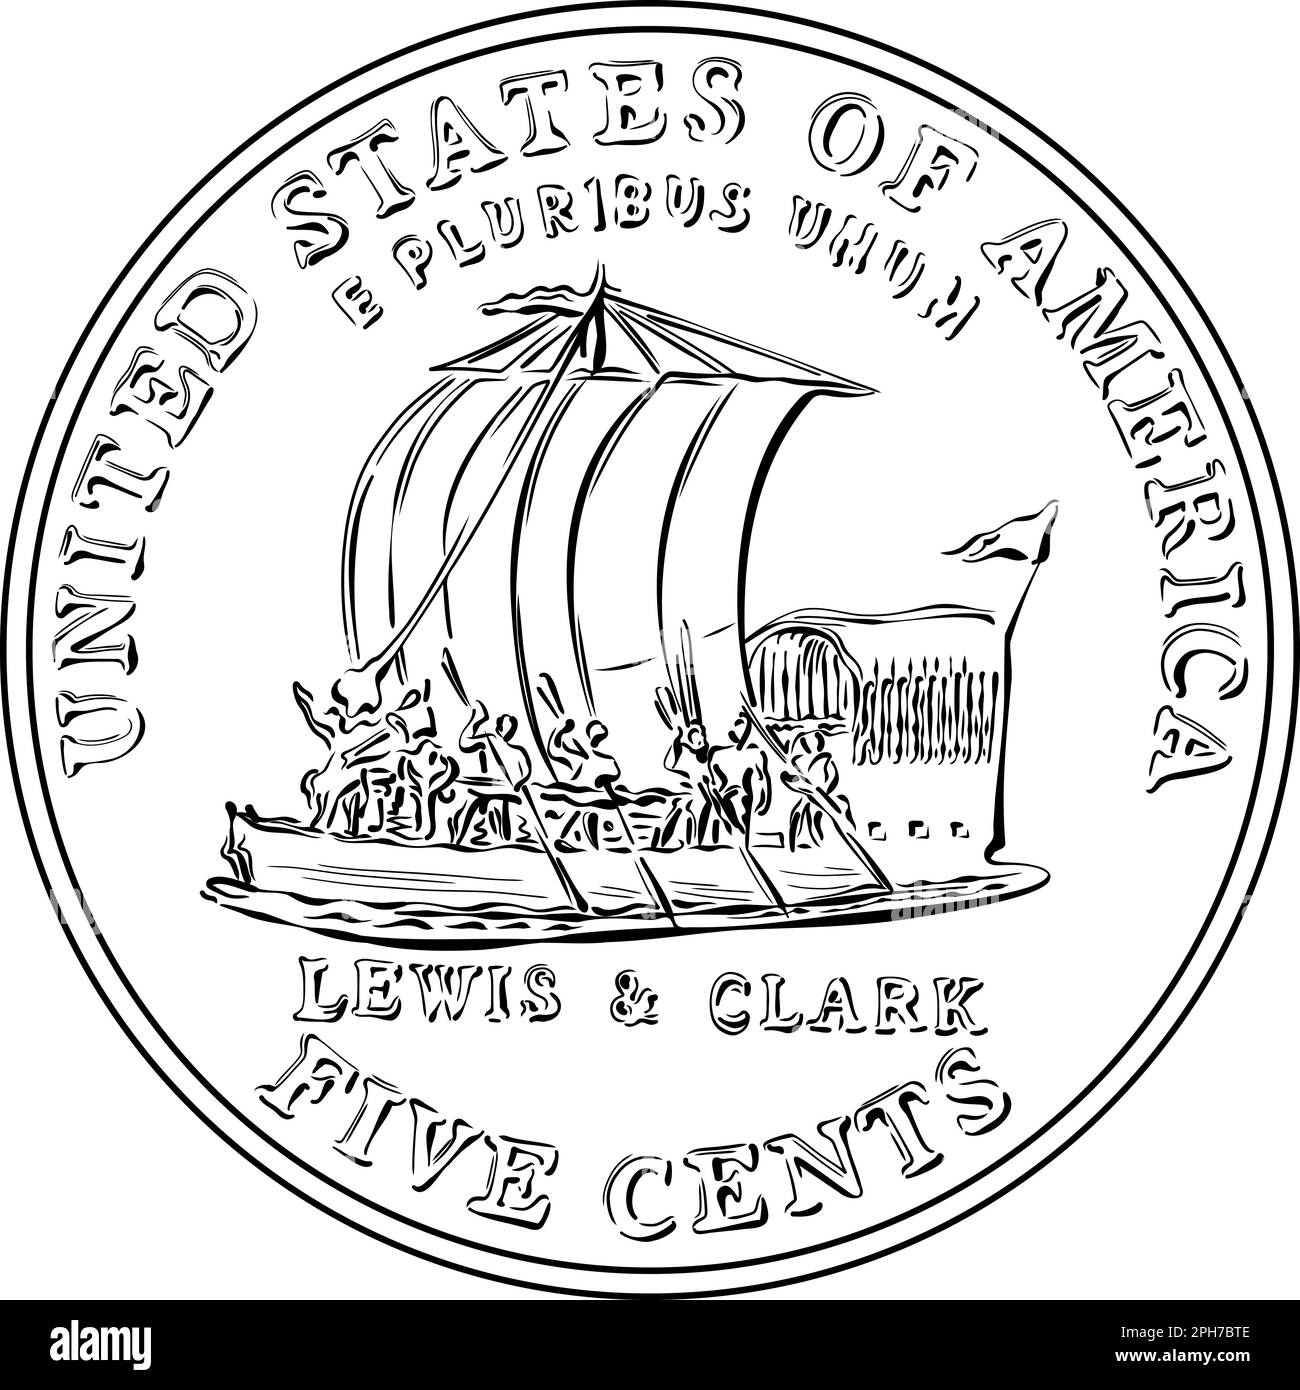 Jefferson nickel, American Money, USA pièce de cinq cents avec le bateau à quille de Lewis et Clark Expedition sur le dos. Image en noir et blanc Illustration de Vecteur